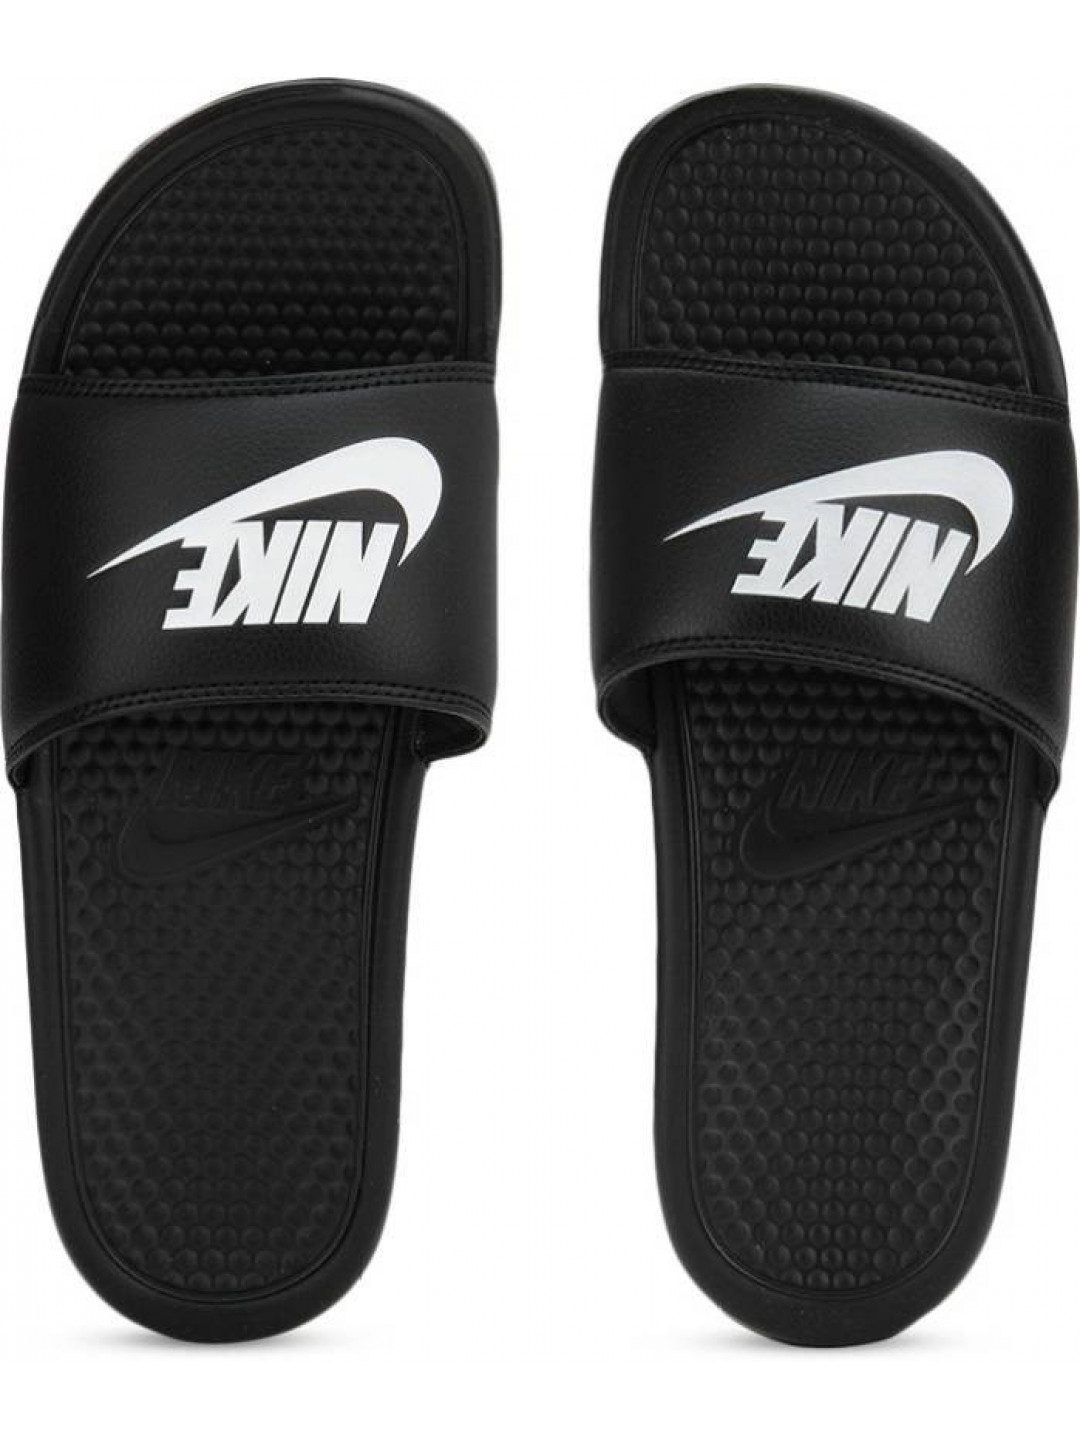 Shop Slippers Nike online | Lazada.com.ph-sgquangbinhtourist.com.vn